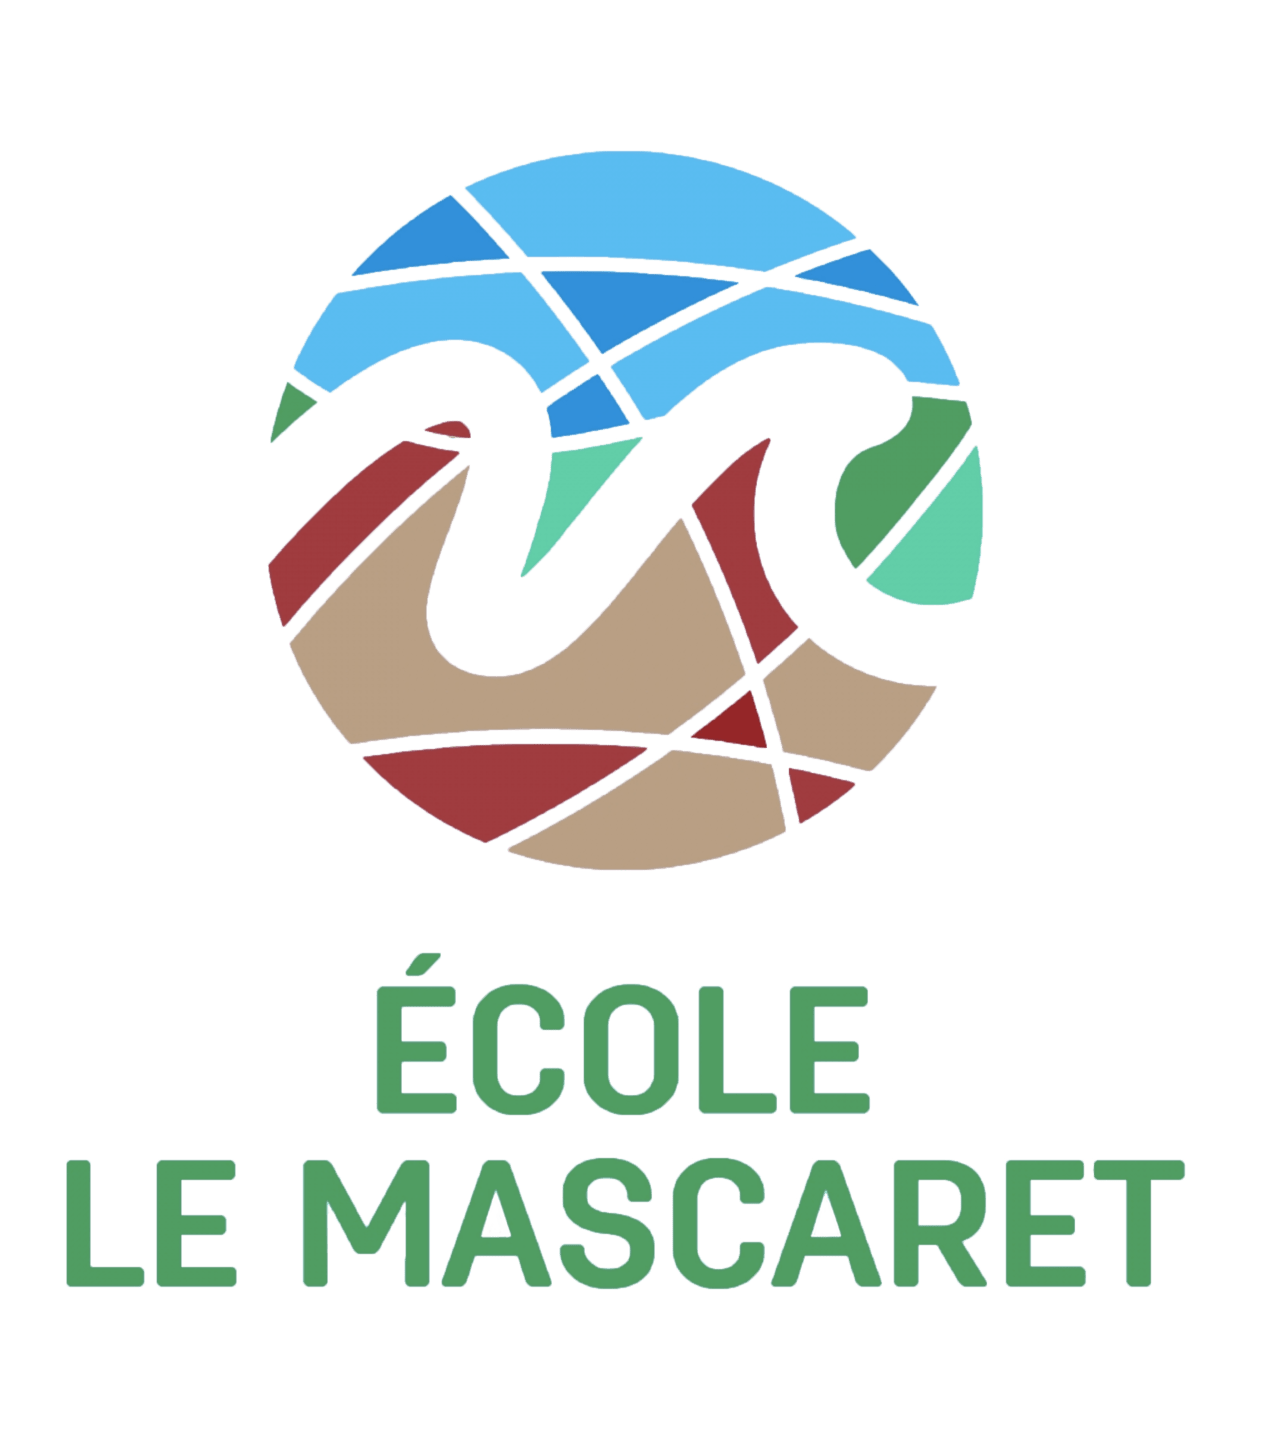 École Le Mascaret logo